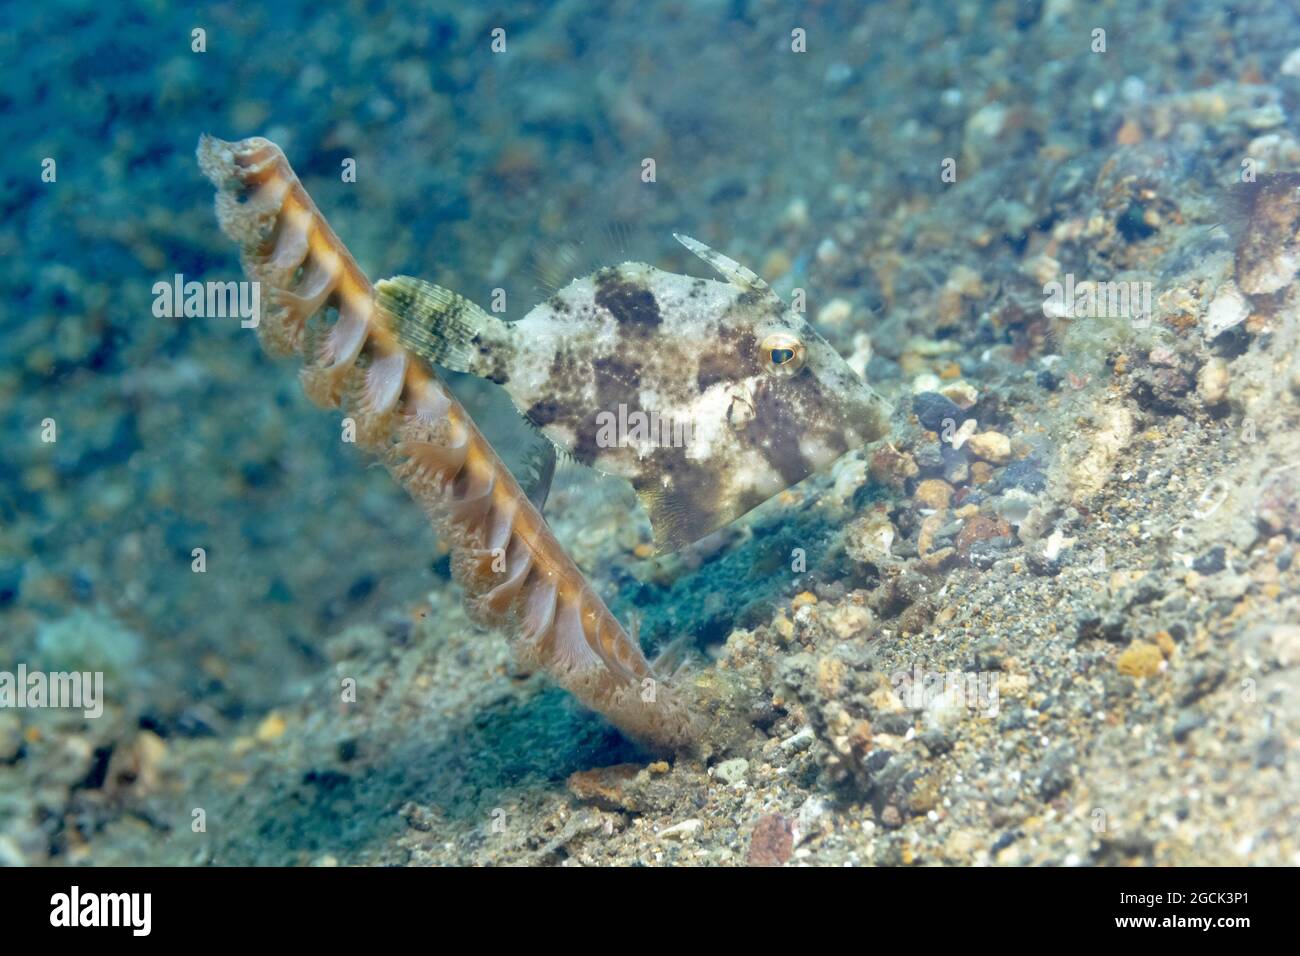 Gros plan de petits Acreichthys tomentosus ou de corégone en soie nageant parmi les coraux près des fonds marins dans les eaux tropicales Banque D'Images